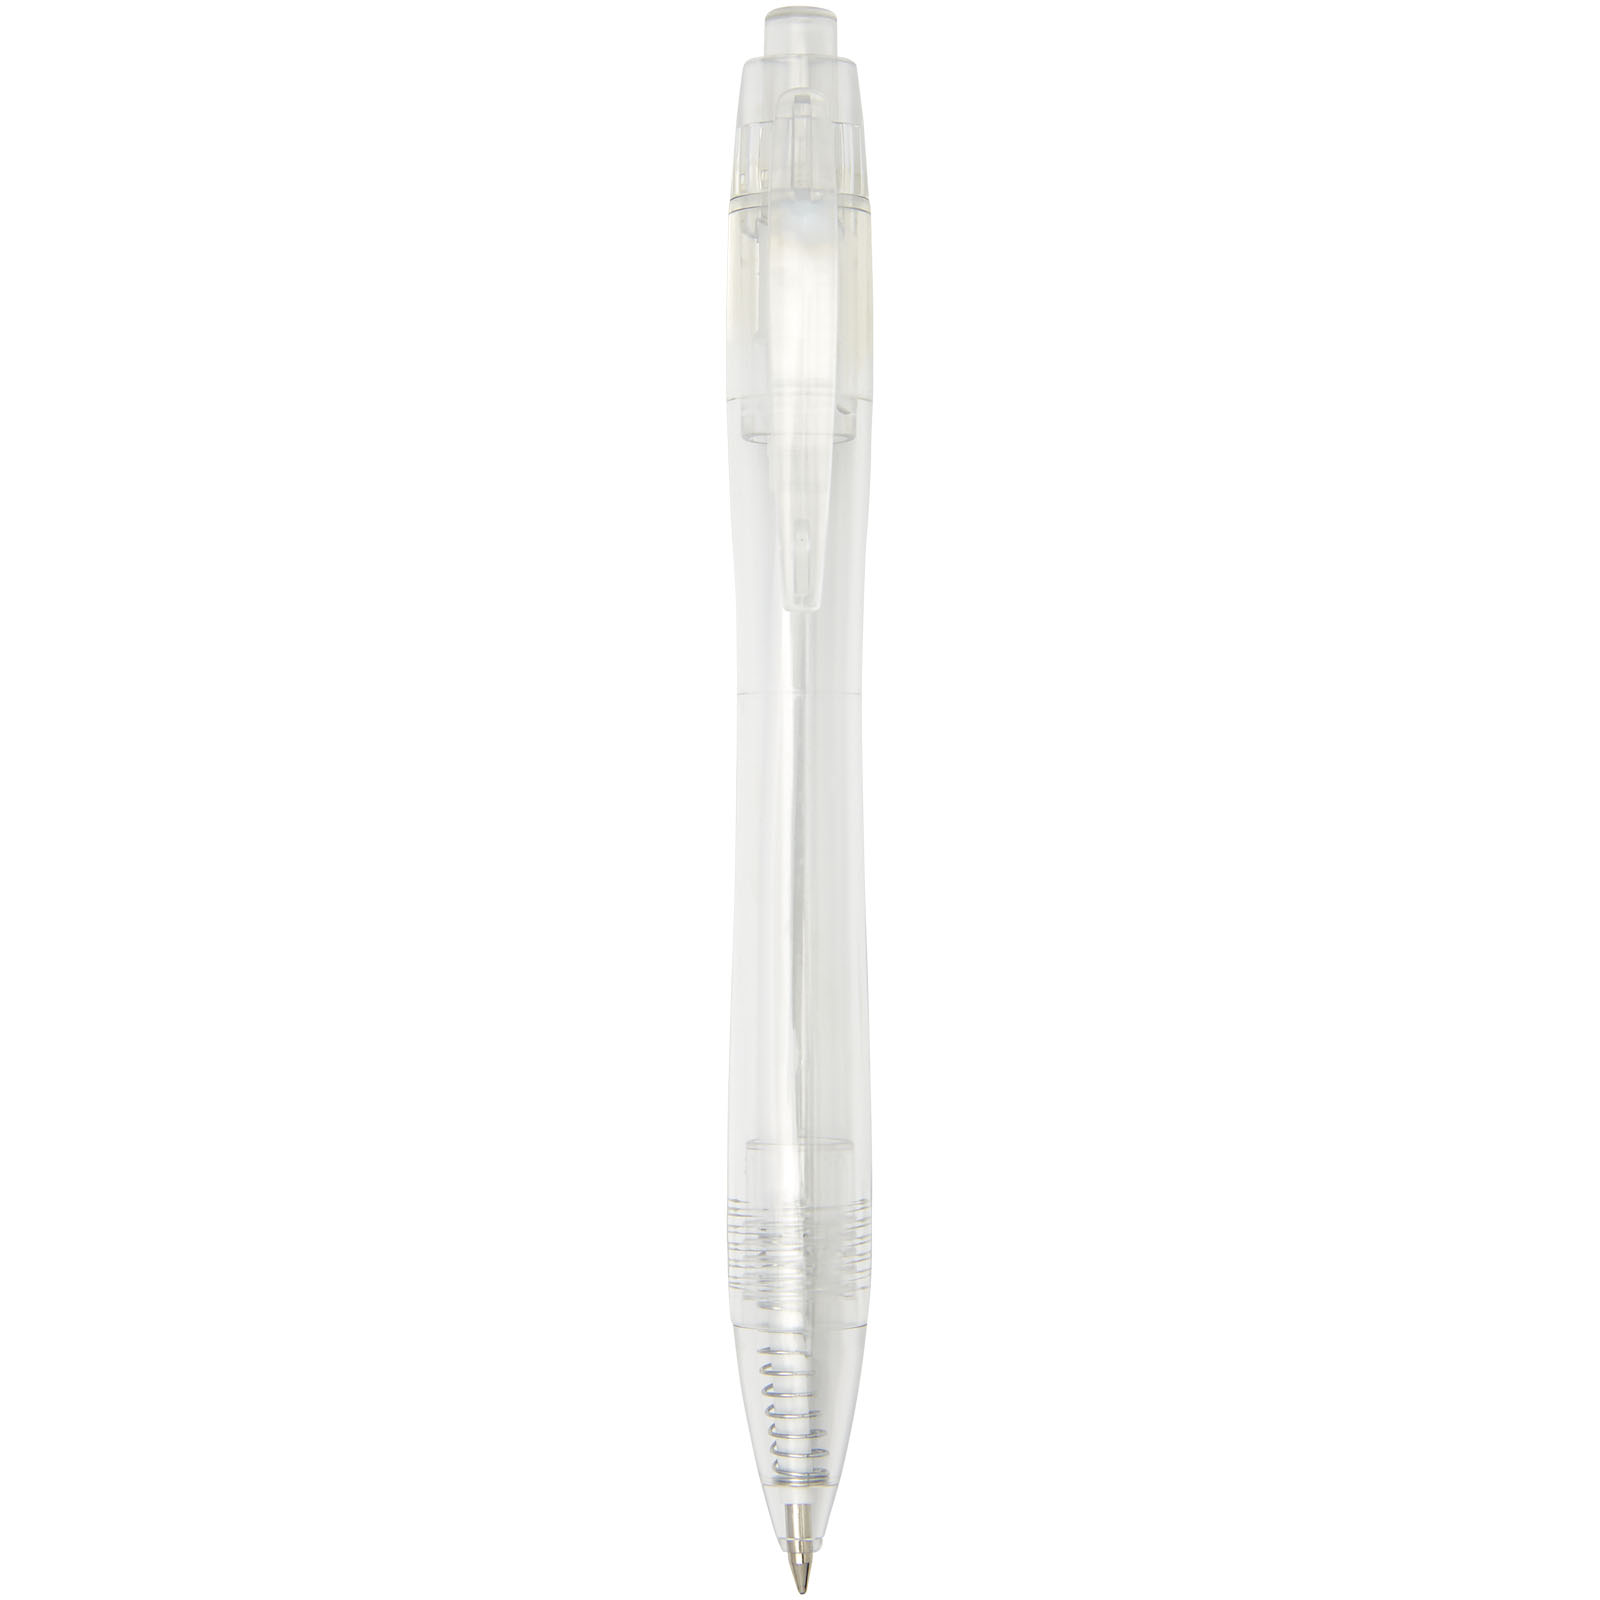 Advertising Ballpoint Pens - Alberni RPET ballpoint pen